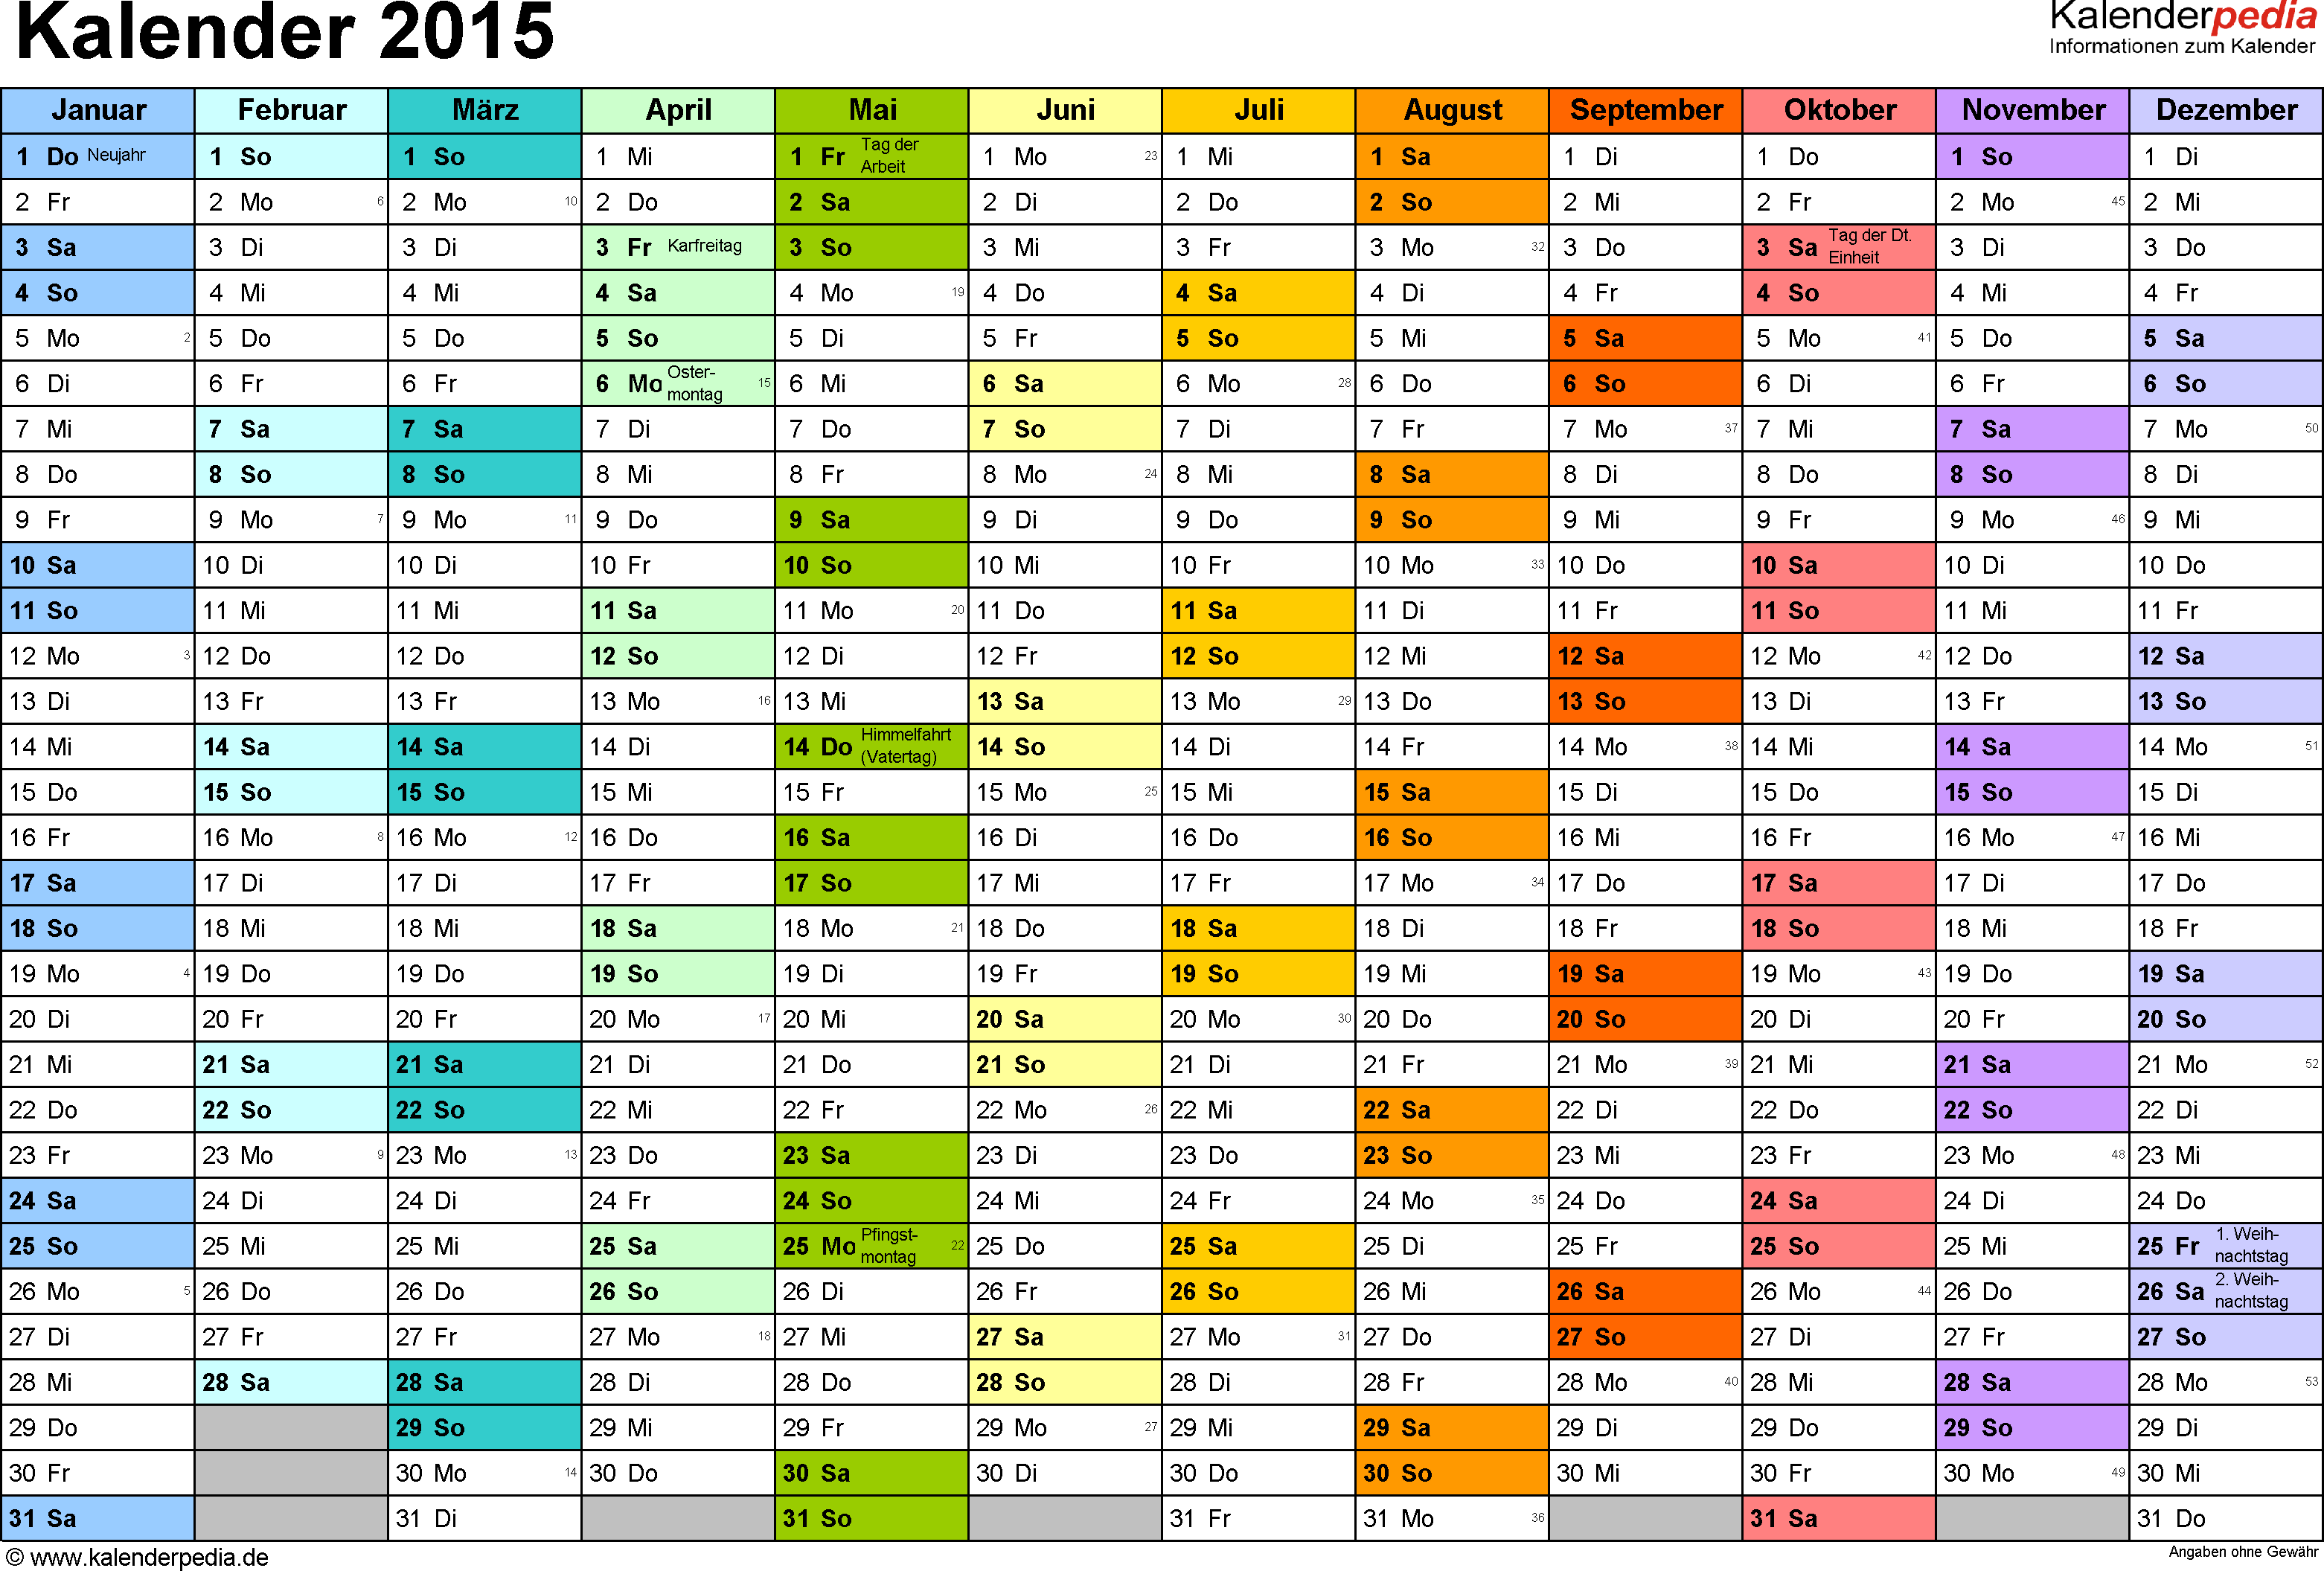 Kalender 2015 Word Zum Ausdrucken 16 Vorlagen Kostenlos Kalender 2018 Kalender 2015 Kalender Vorlagen